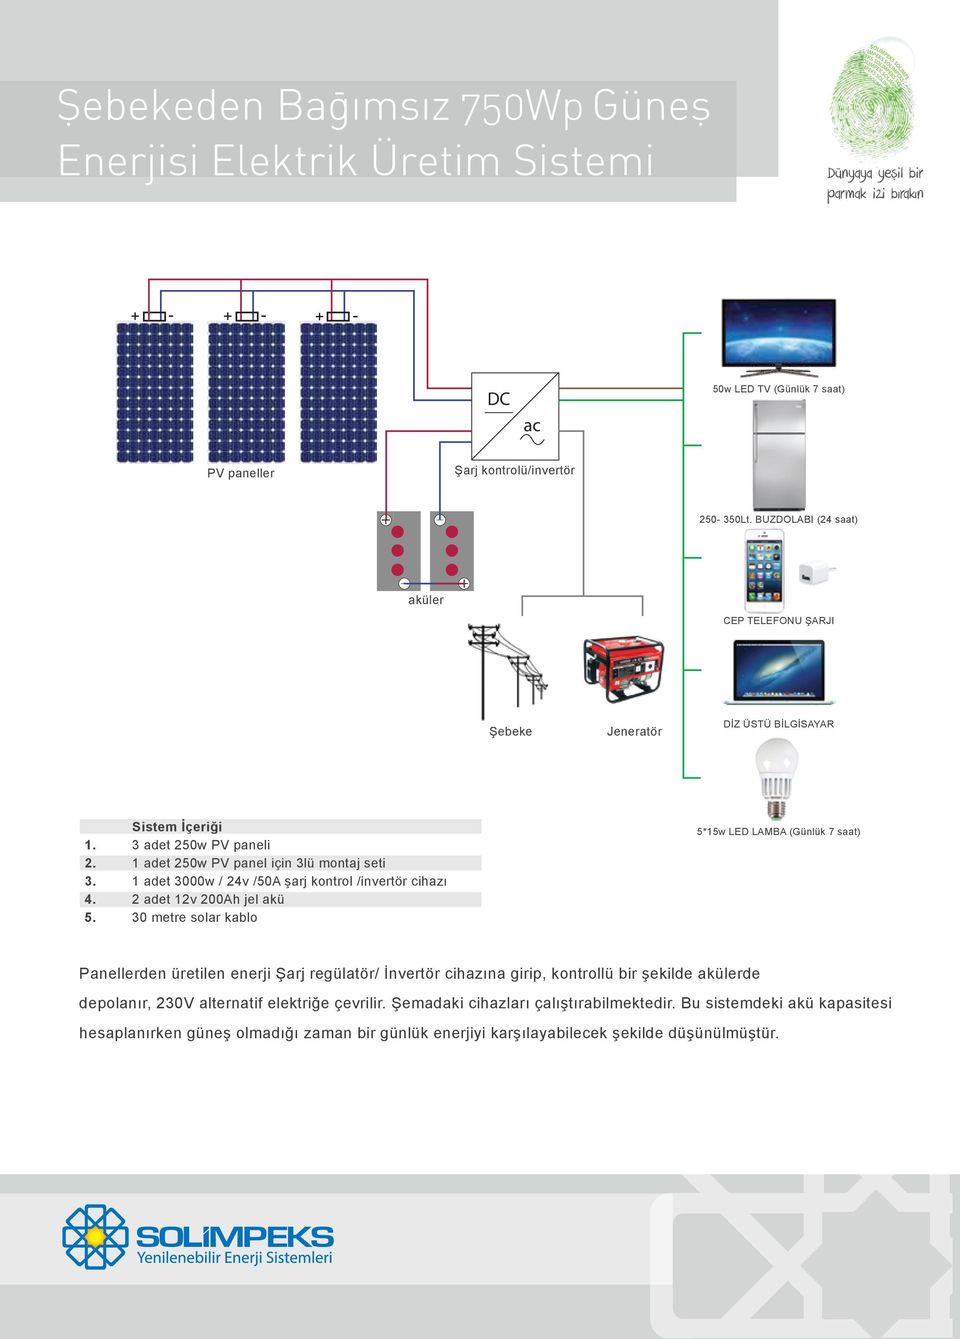 30 metre solar kablo 5*15w LED LAMBA (Günlük 7 saat) Panellerden üretilen enerji Şarj regülatör/ İnvertör cihazına girip, kontrollü bir şekilde